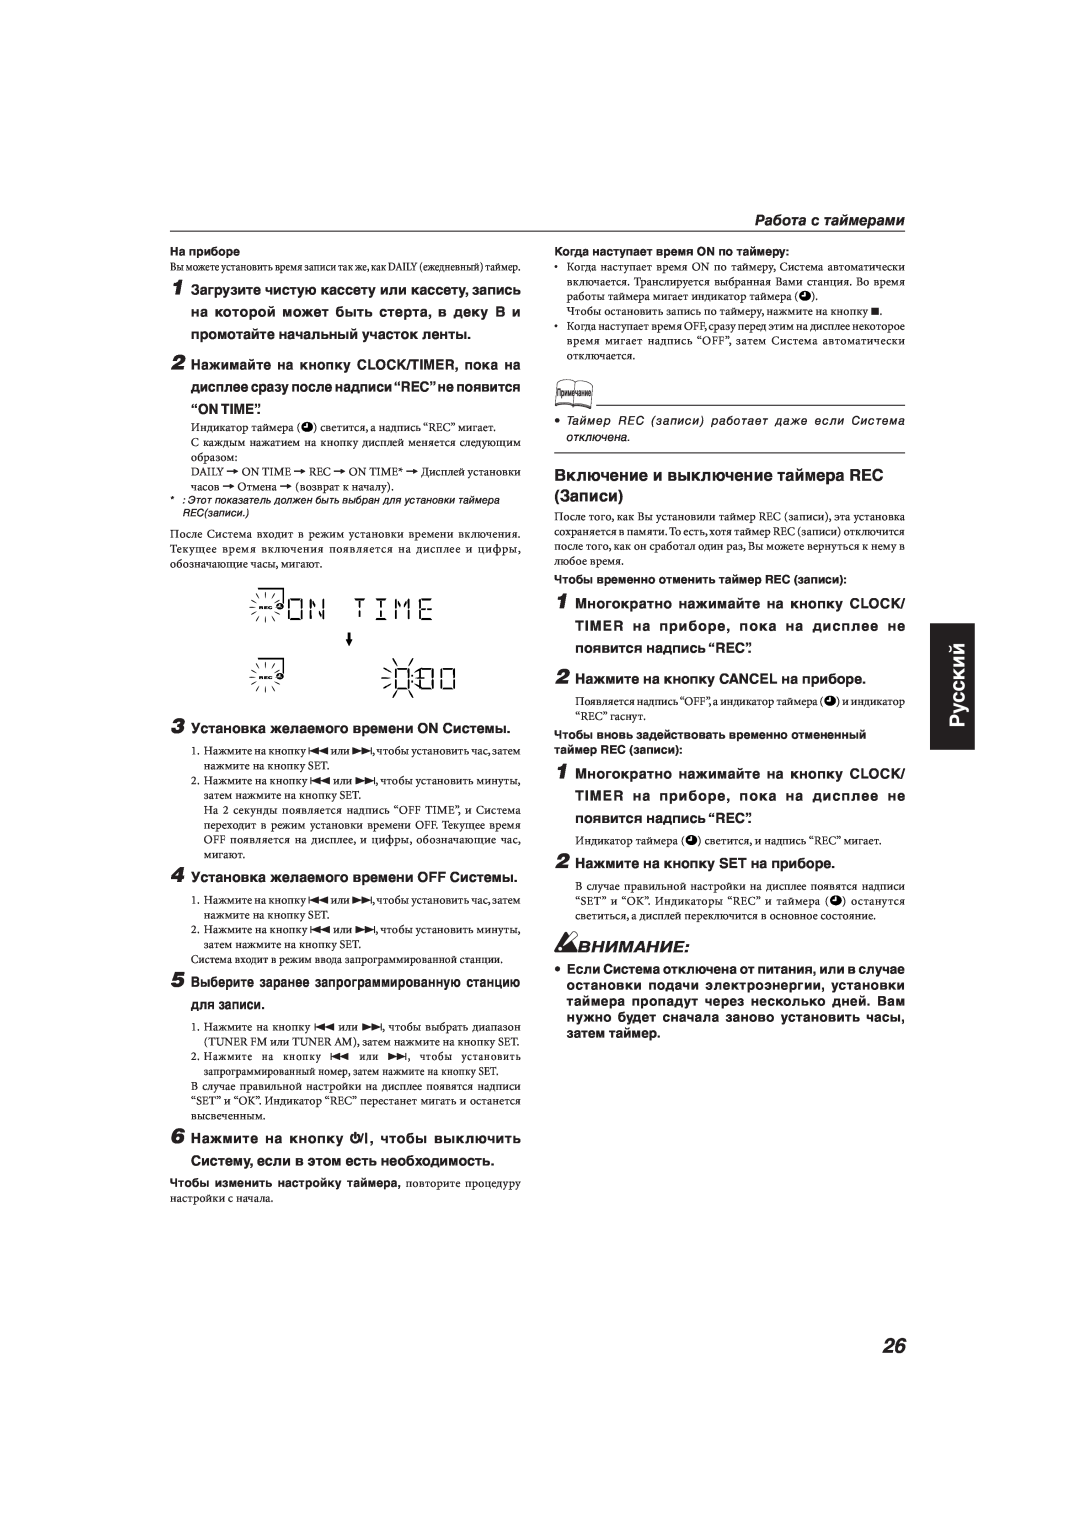 JVC MX-KA66 manual Русский, Внимание, Работа с таймерами, 3 Установка желаемого времени ON Системы, для записи 